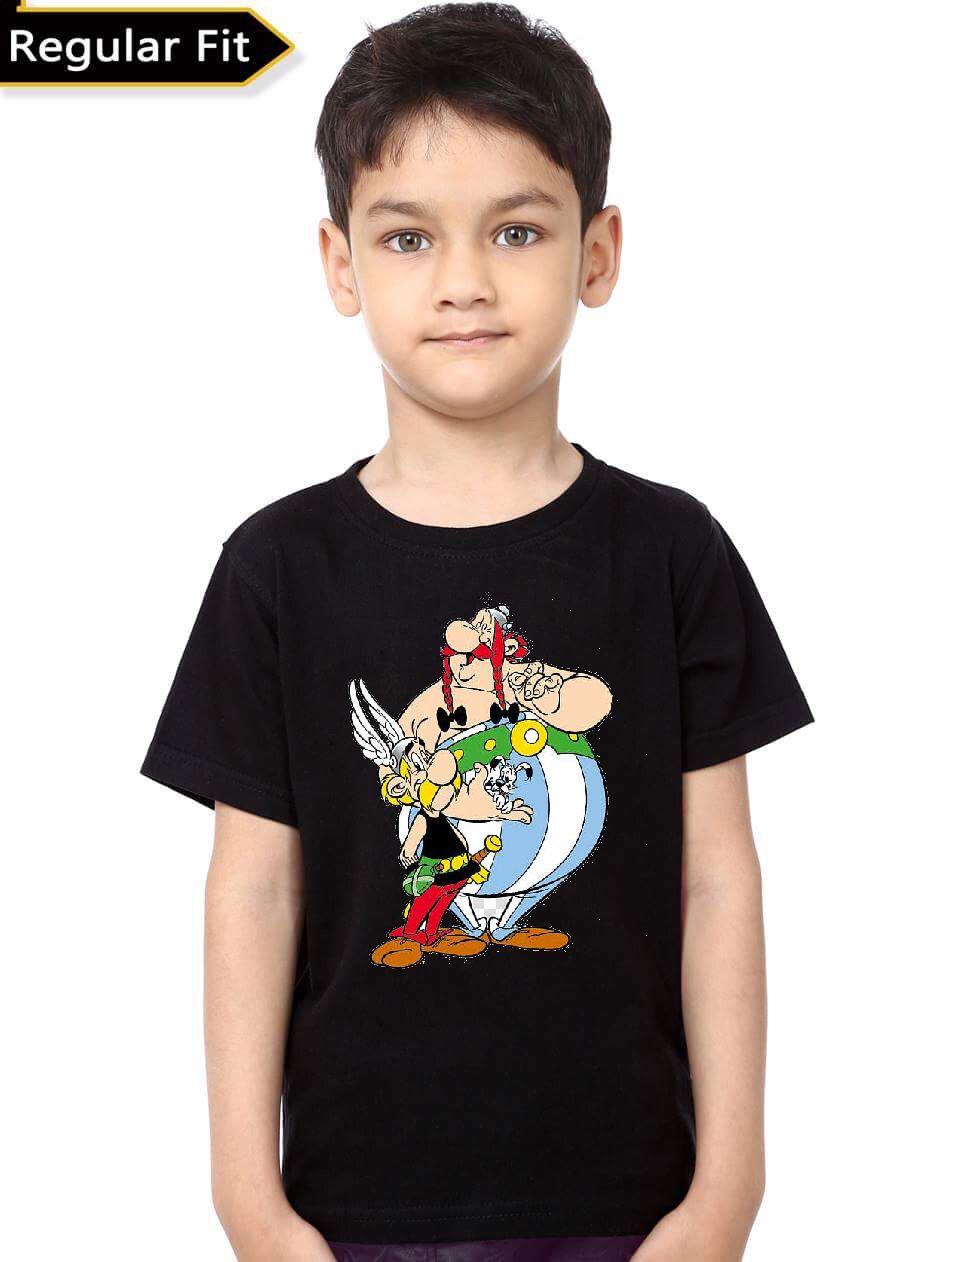 asterix t shirt india